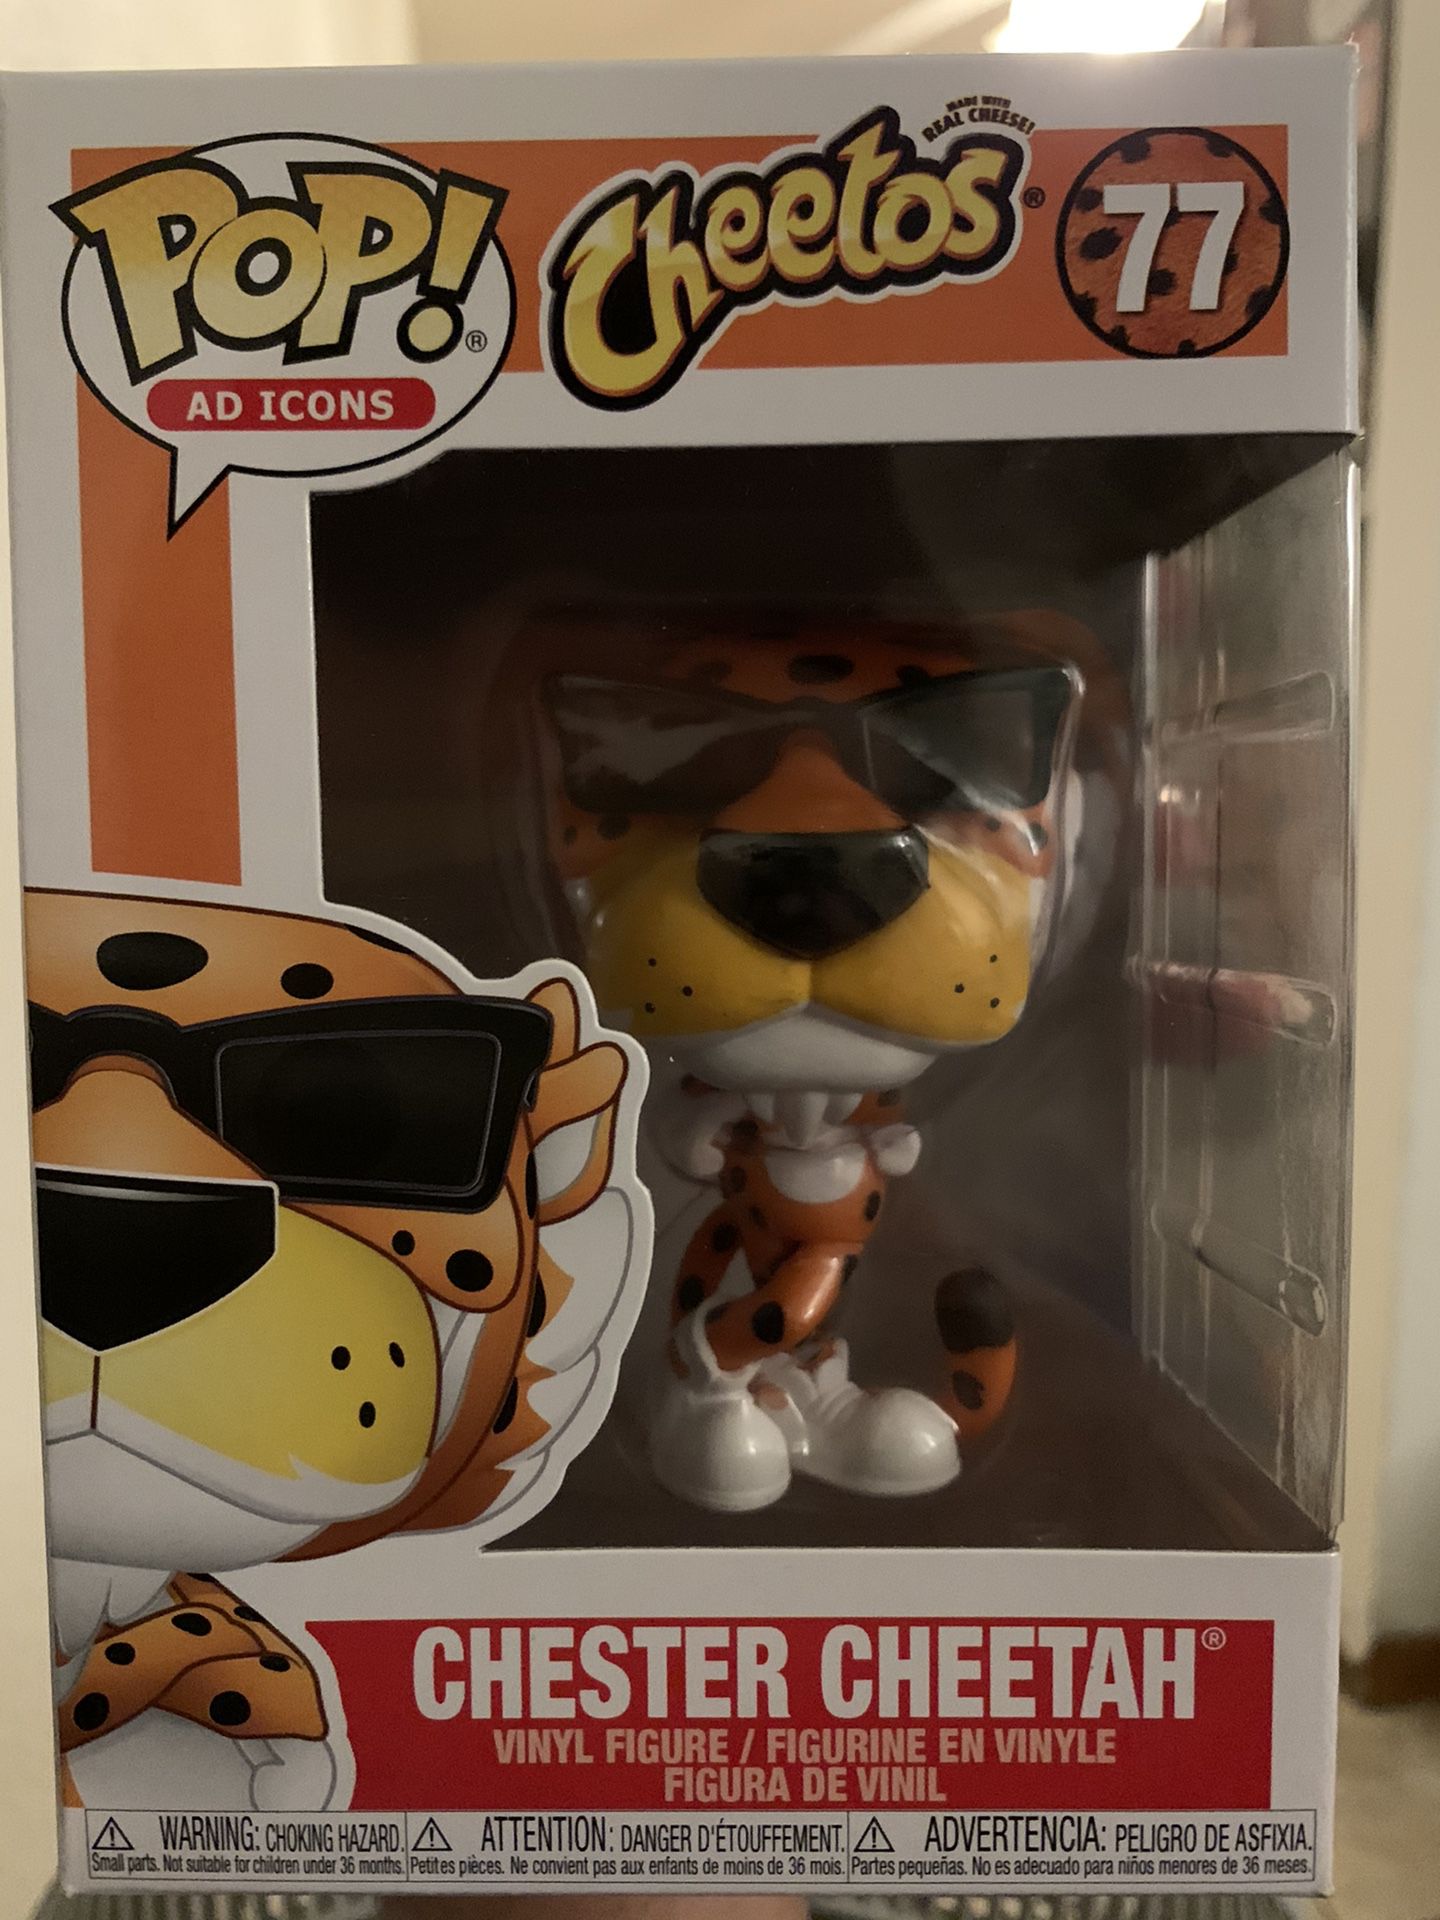 Chester Cheetah, Pop!, Cheetos, Ad Icon, 77